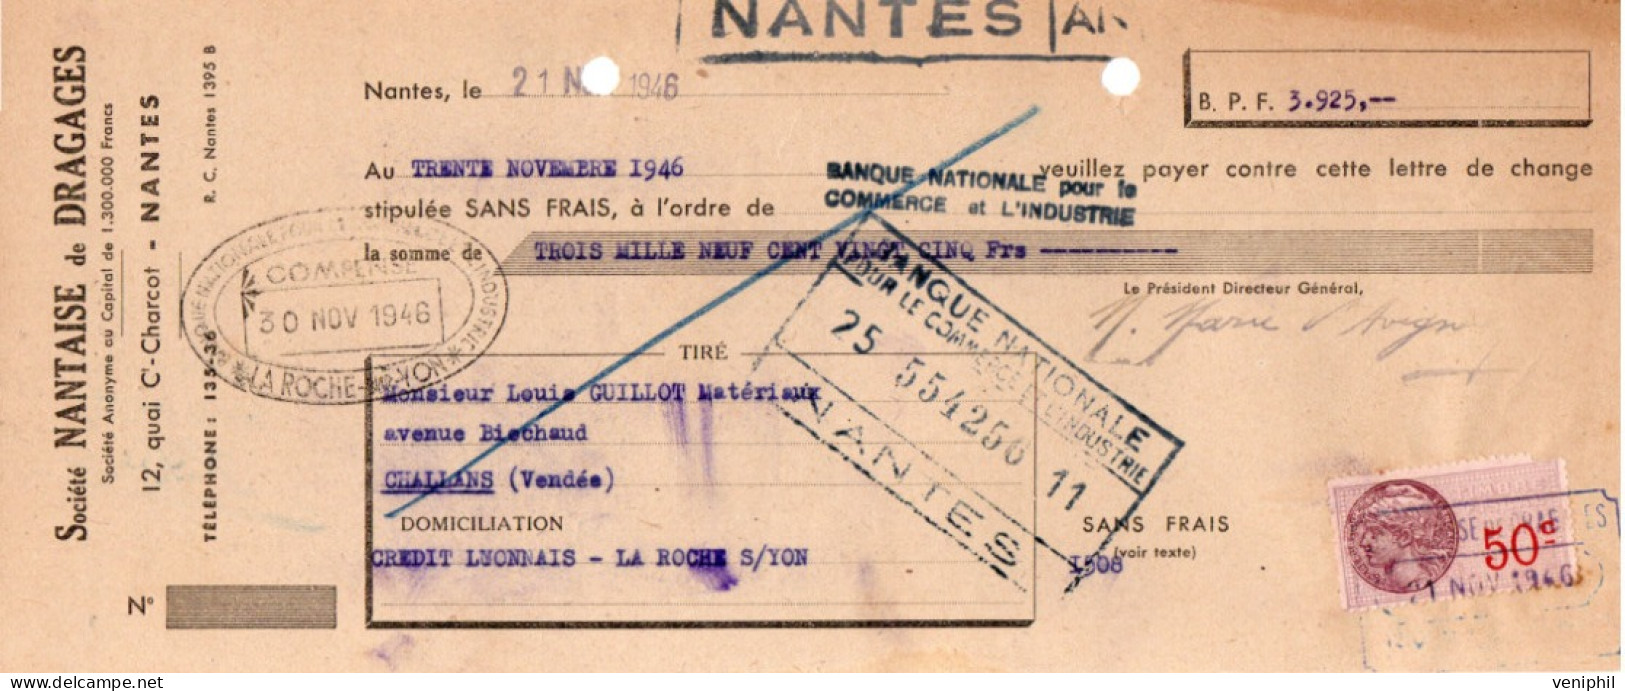 LETTRE  DE CHANGETIMBREE- SOCIETE NANTAISE DE DRAGAGES -NANTES - ANNEE 1946 - Wissels